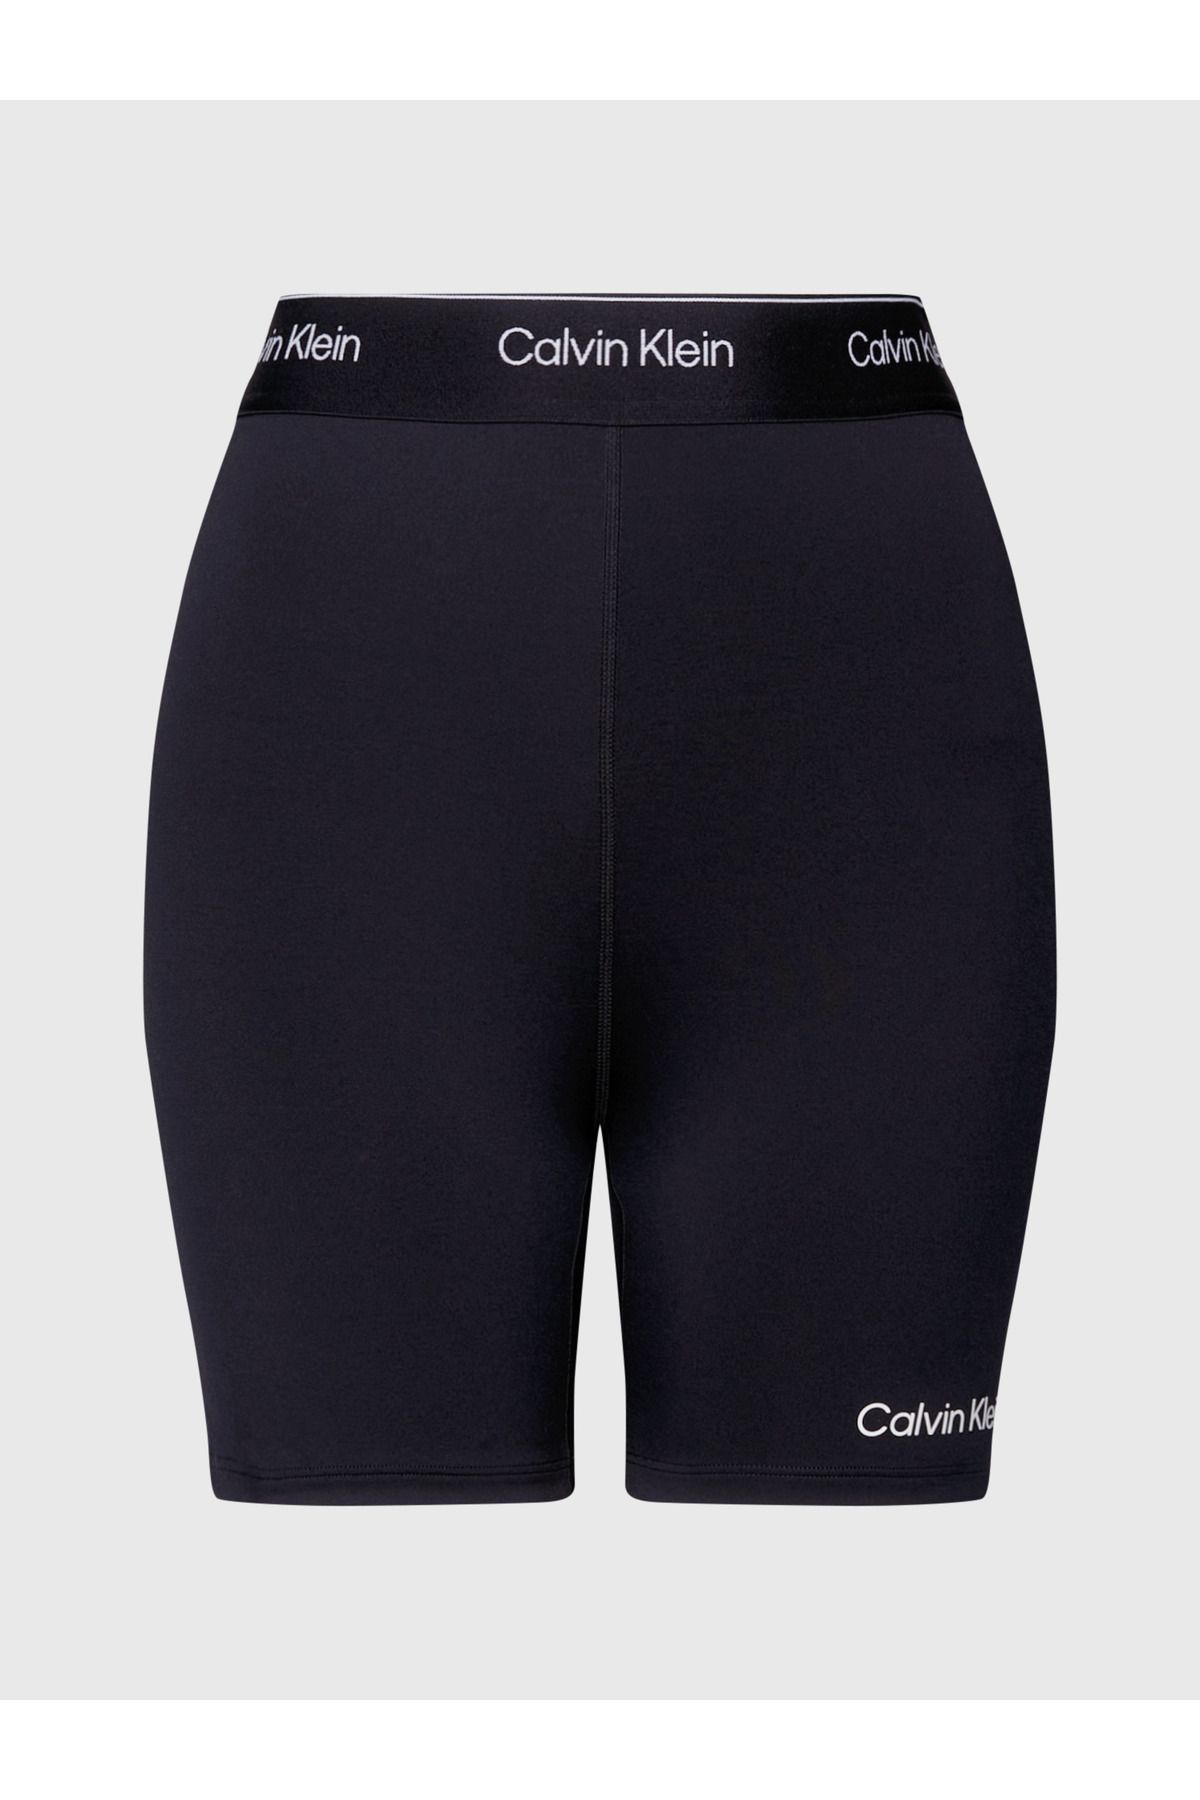 Calvin Klein Kadın Marka Logolu Elastik Bel Bantlı Kısa Tayt  Bisiklet Spor Ve Günlük Kullanıma Uygun Siyah Şort